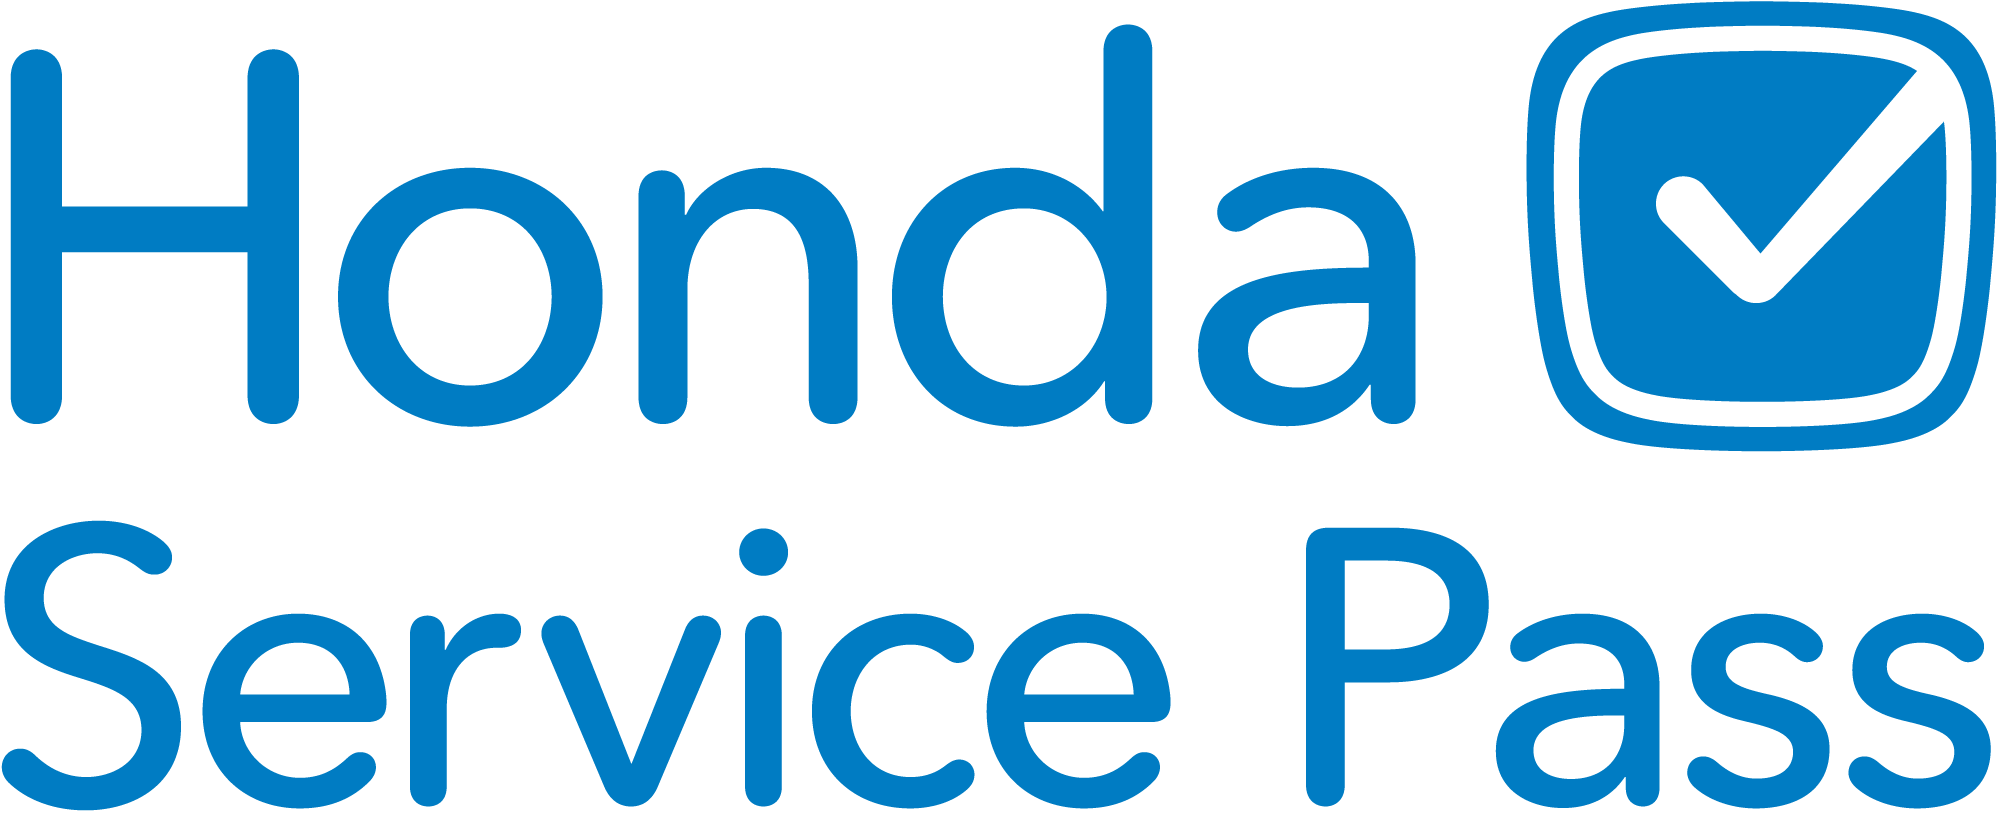 Logo of Honda Service Pass with a checkmark symbol